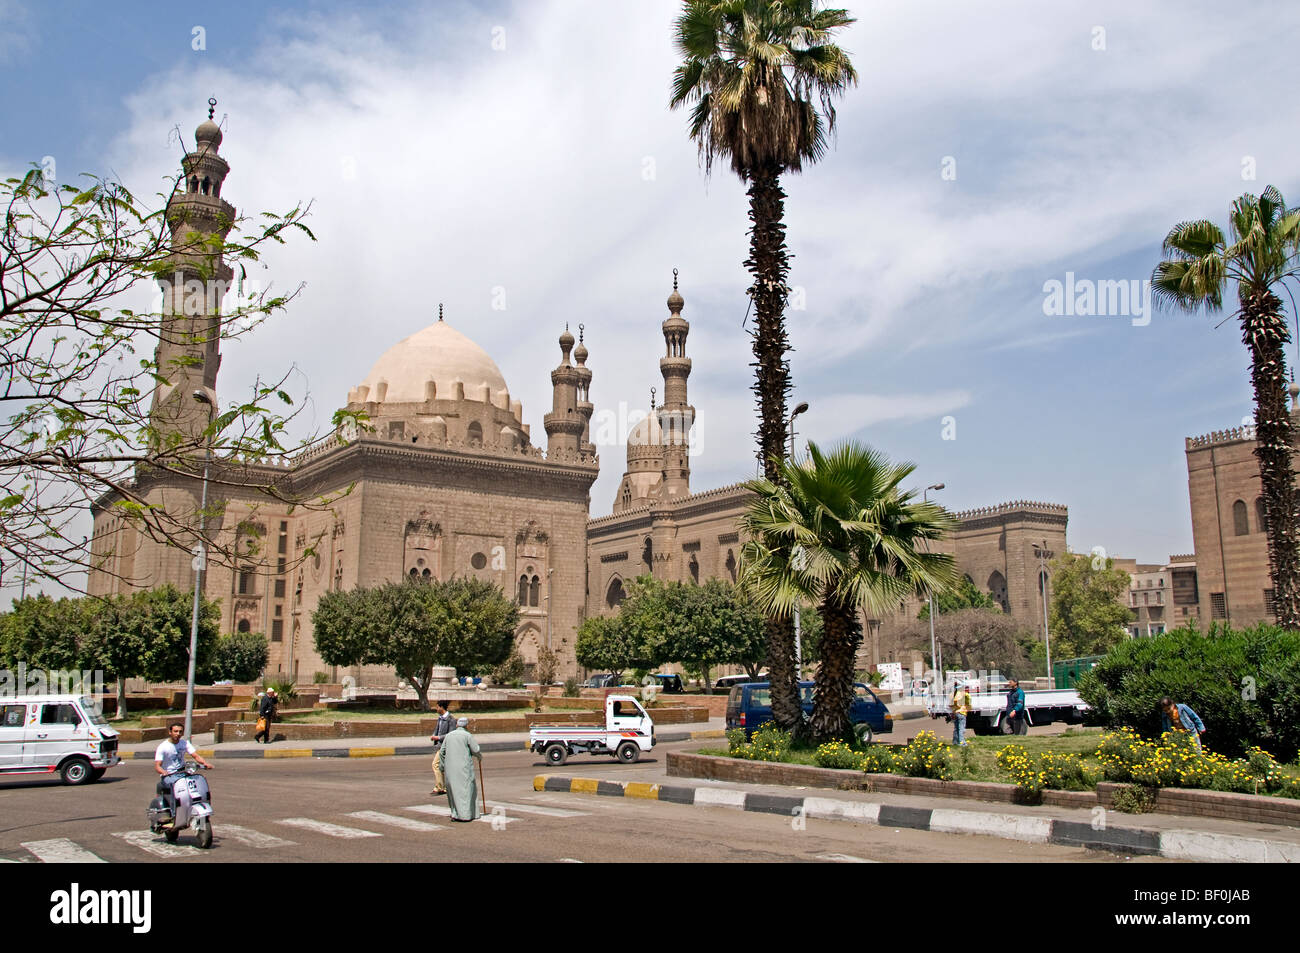 Il Cairo Egitto sultan moschea Hassan a sinistra e ali moschea rifai destra Foto Stock